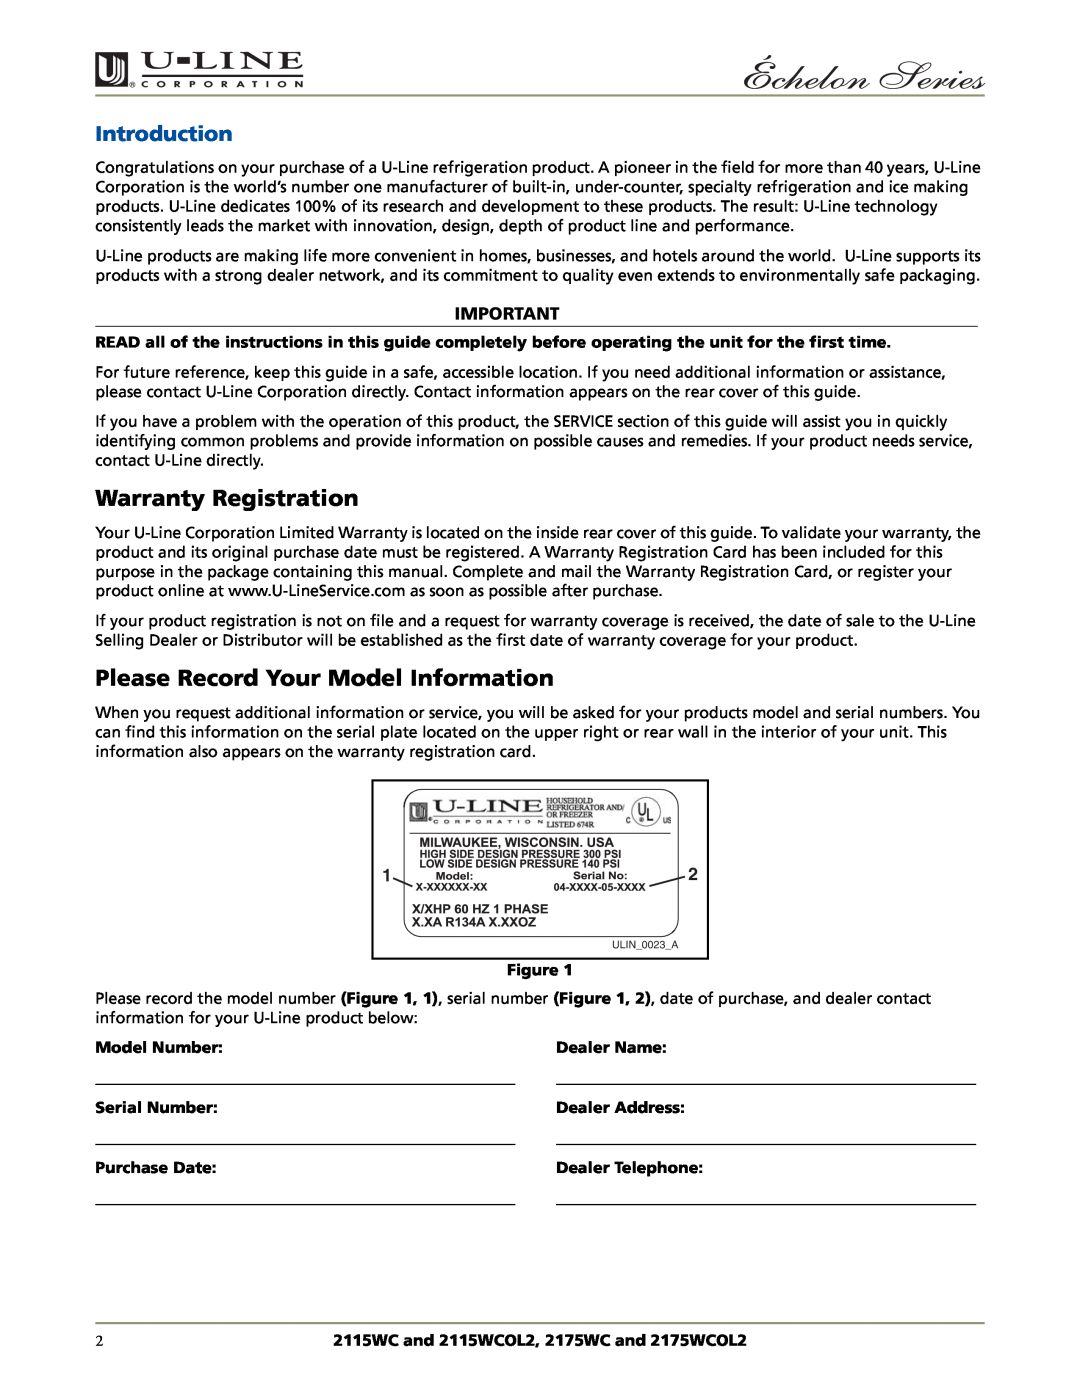 U-Line 2175WCOL2 Warranty Registration, Please Record Your Model Information, Introduction, Model Number, Dealer Name 